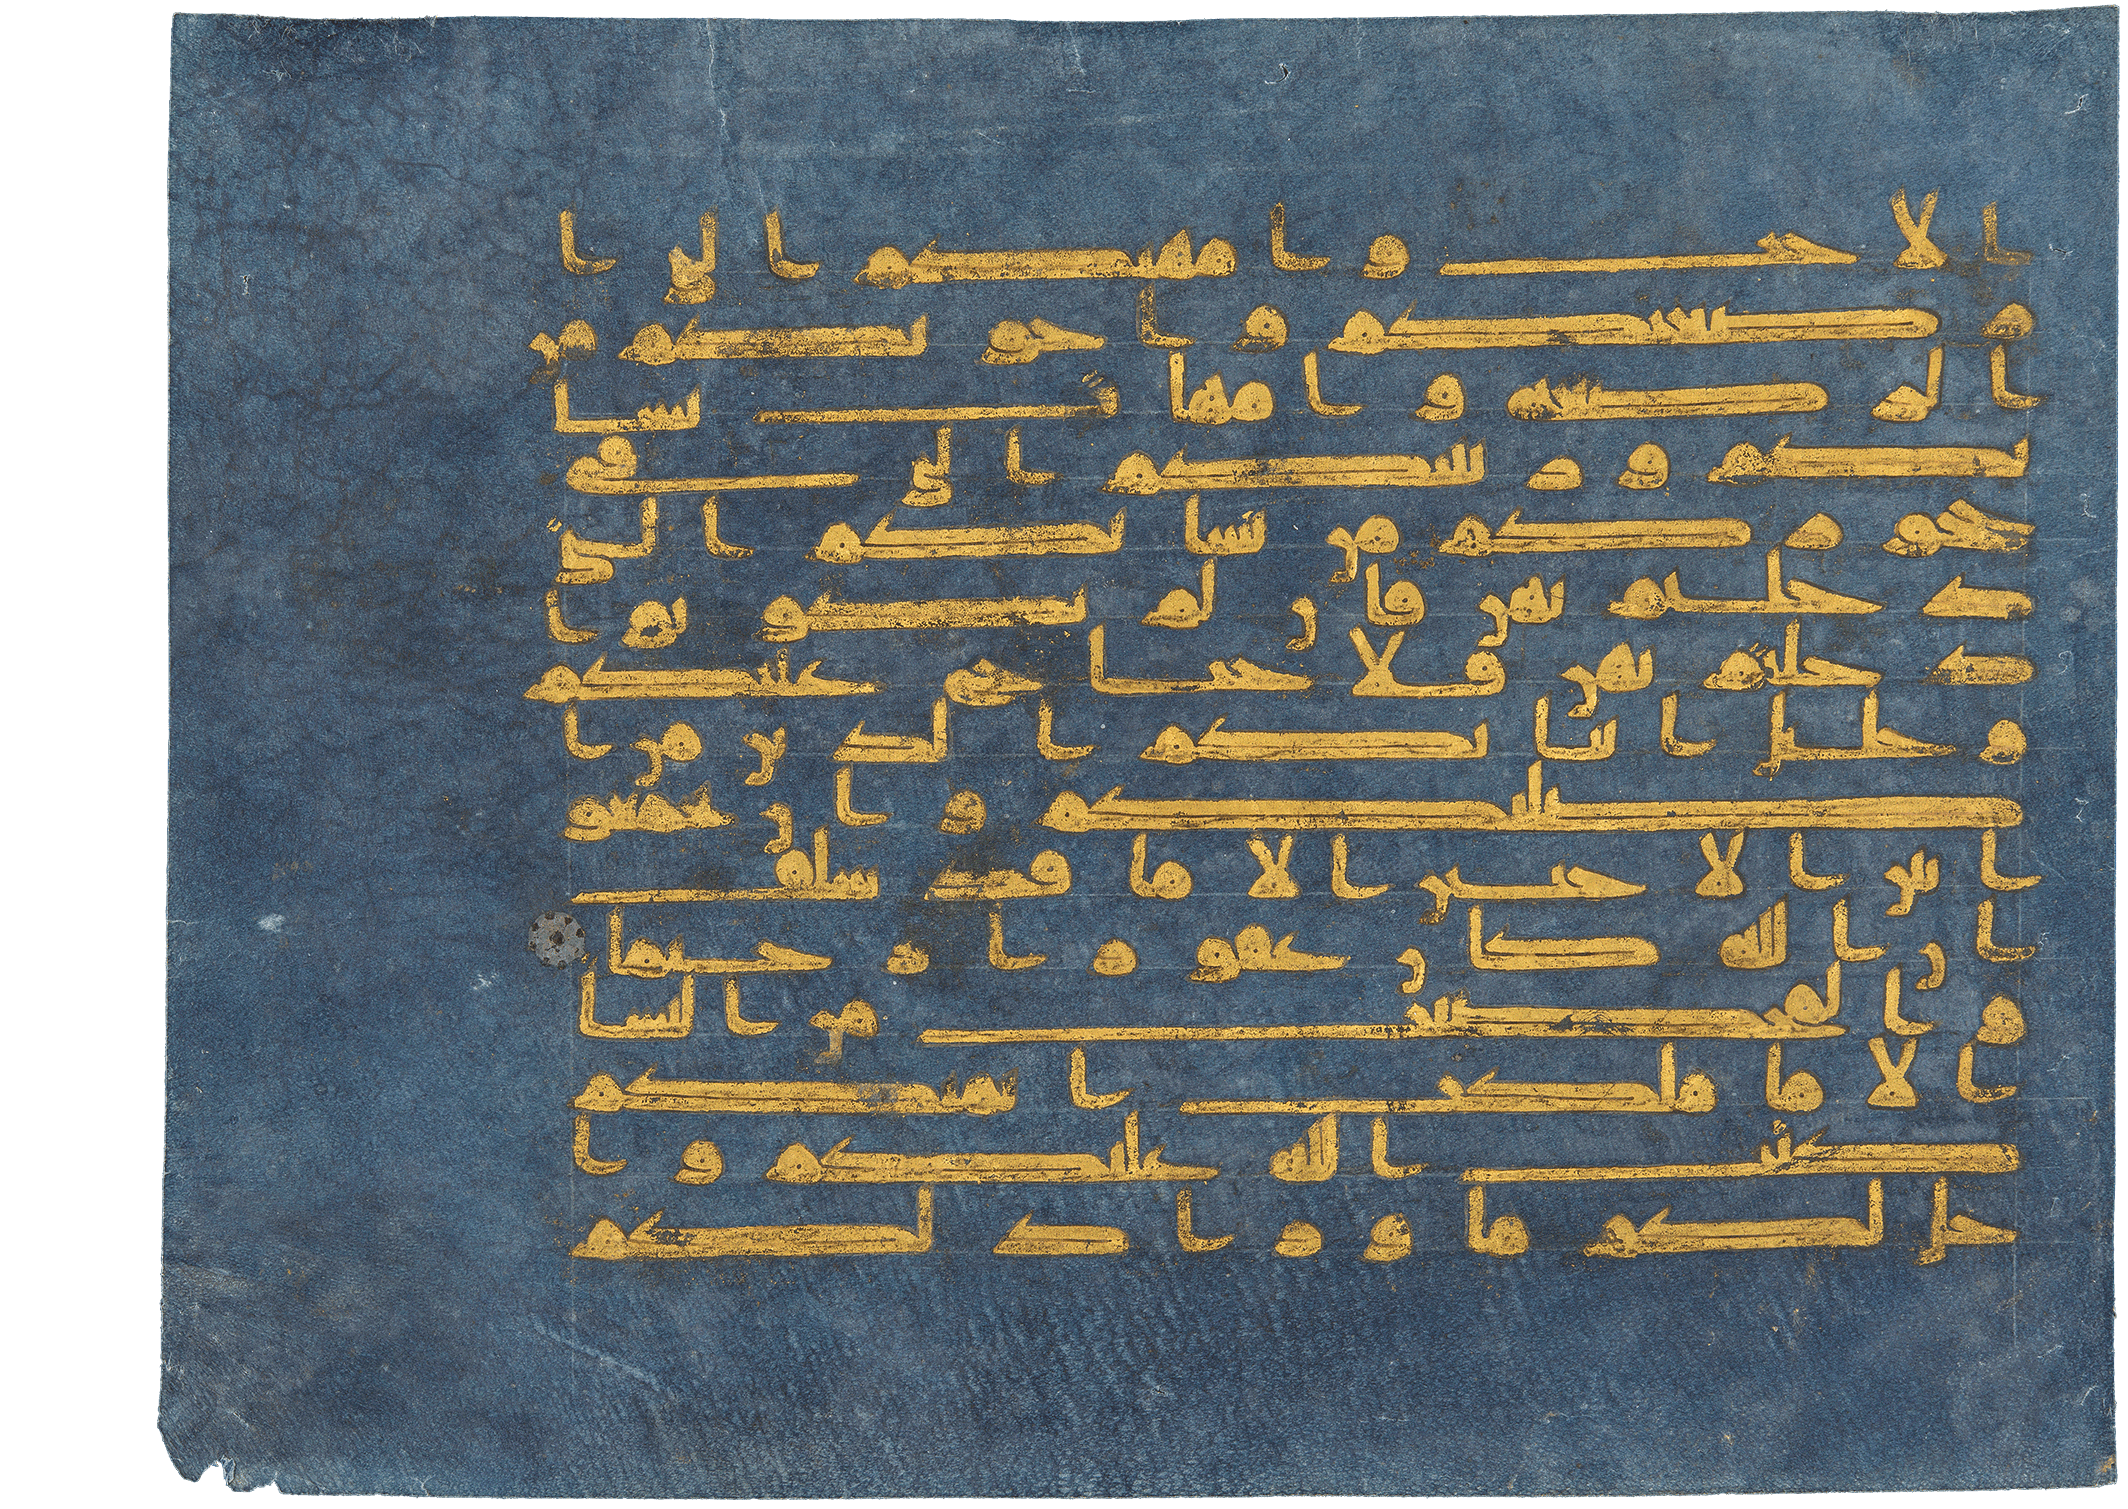 Blauer Koran, Blue Koran, Blue Quran, blue Qu'ran, Seite aus dem Blauen Koran (Vers 60 und 61 aus Sure II). Aus: Blue Qur’an, Tunesien, 9.-10. Jh. (Dublin, Chester Beatty Library, CBL Is 1405A, folio 1a), Leaf from the "Blue Qur'an", Blue Qur’an, Tunisia (possibly Qairawan), 3rd-4th century AH/9th–10th century CE